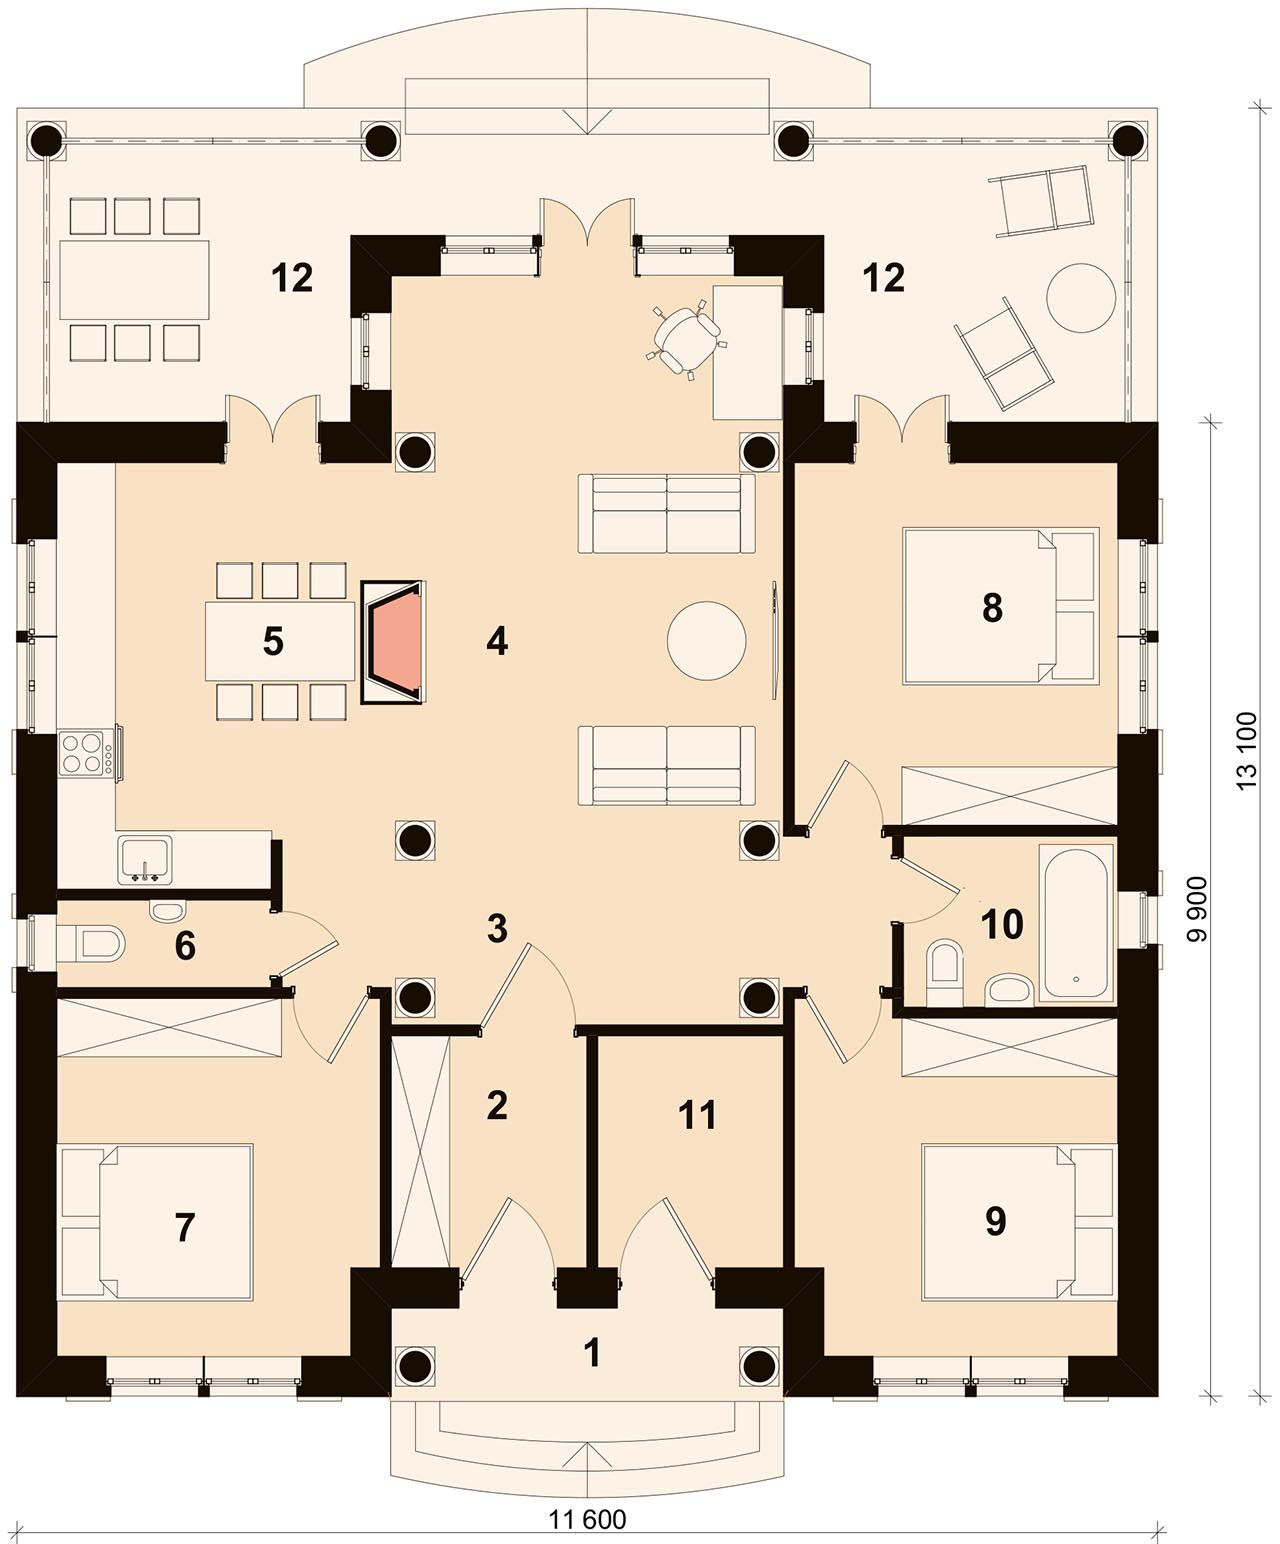 Одноэтажный дом 62 м² с кухней-гостиной, спальней и ванной с окном